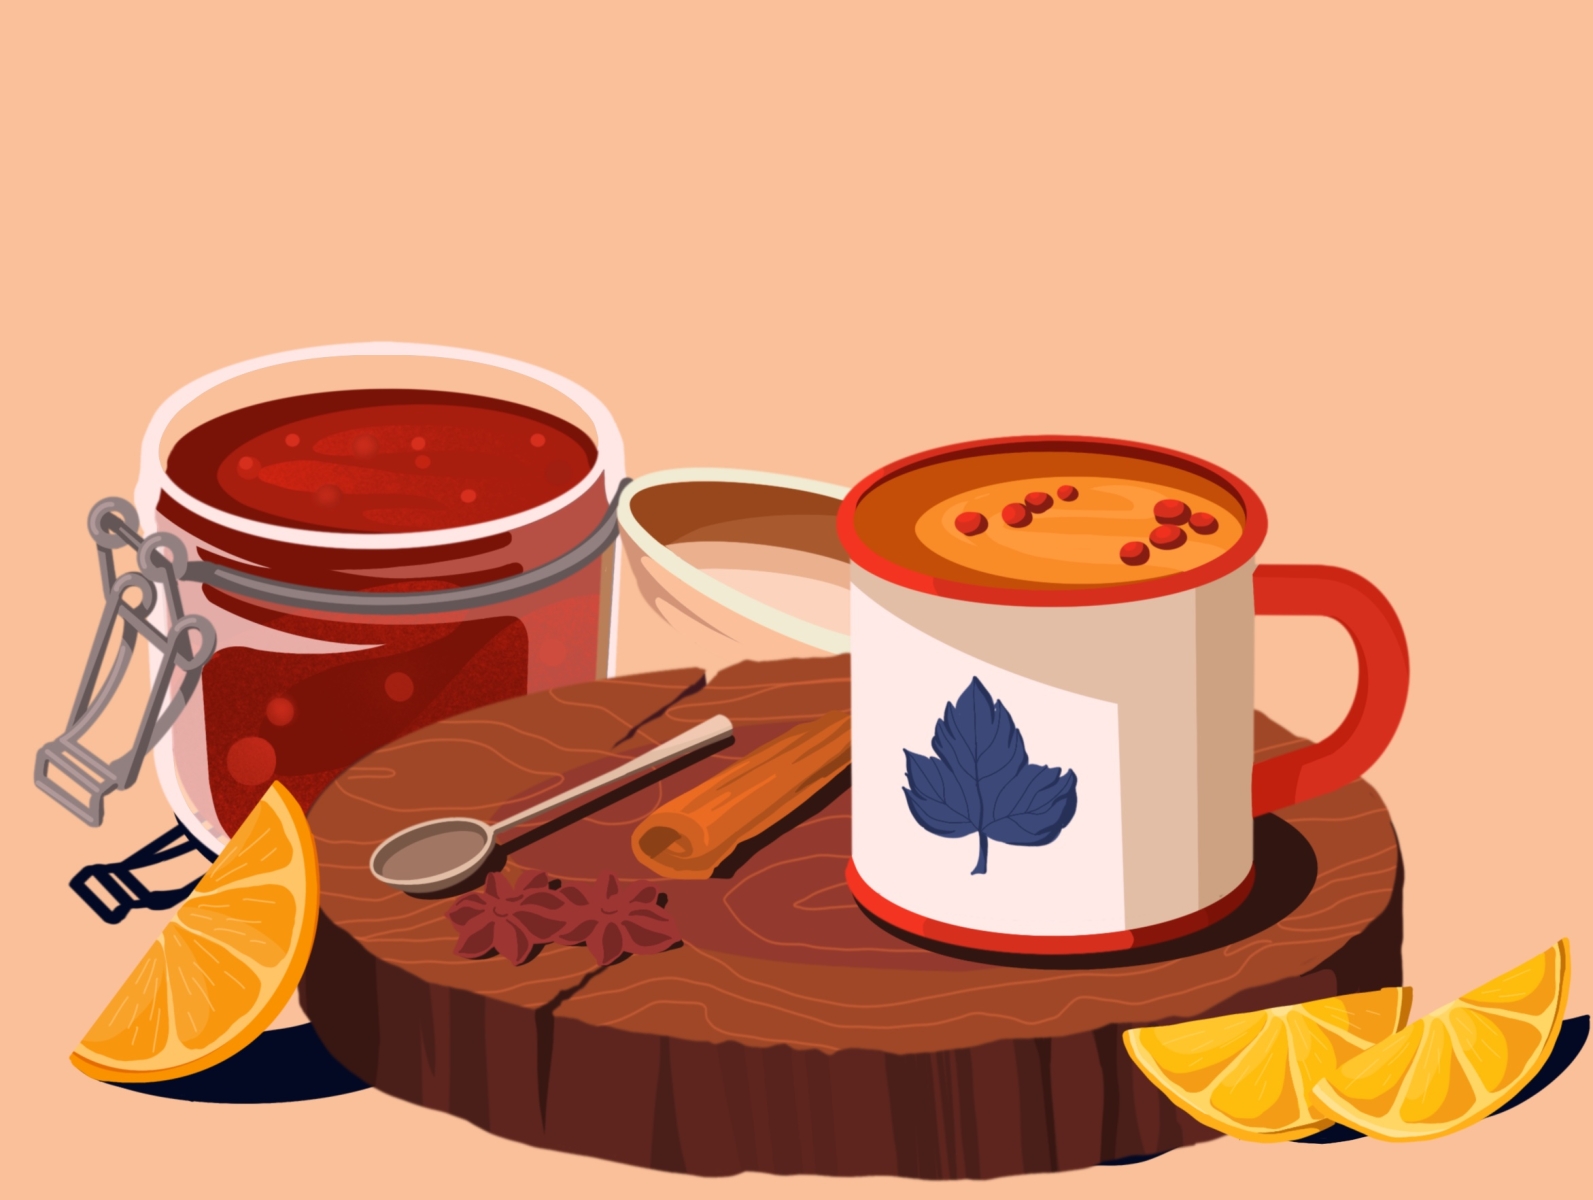 Tea art artwork cinnamon cup illustration illustration art jam lemon sick spoon strawberry tea tea cup